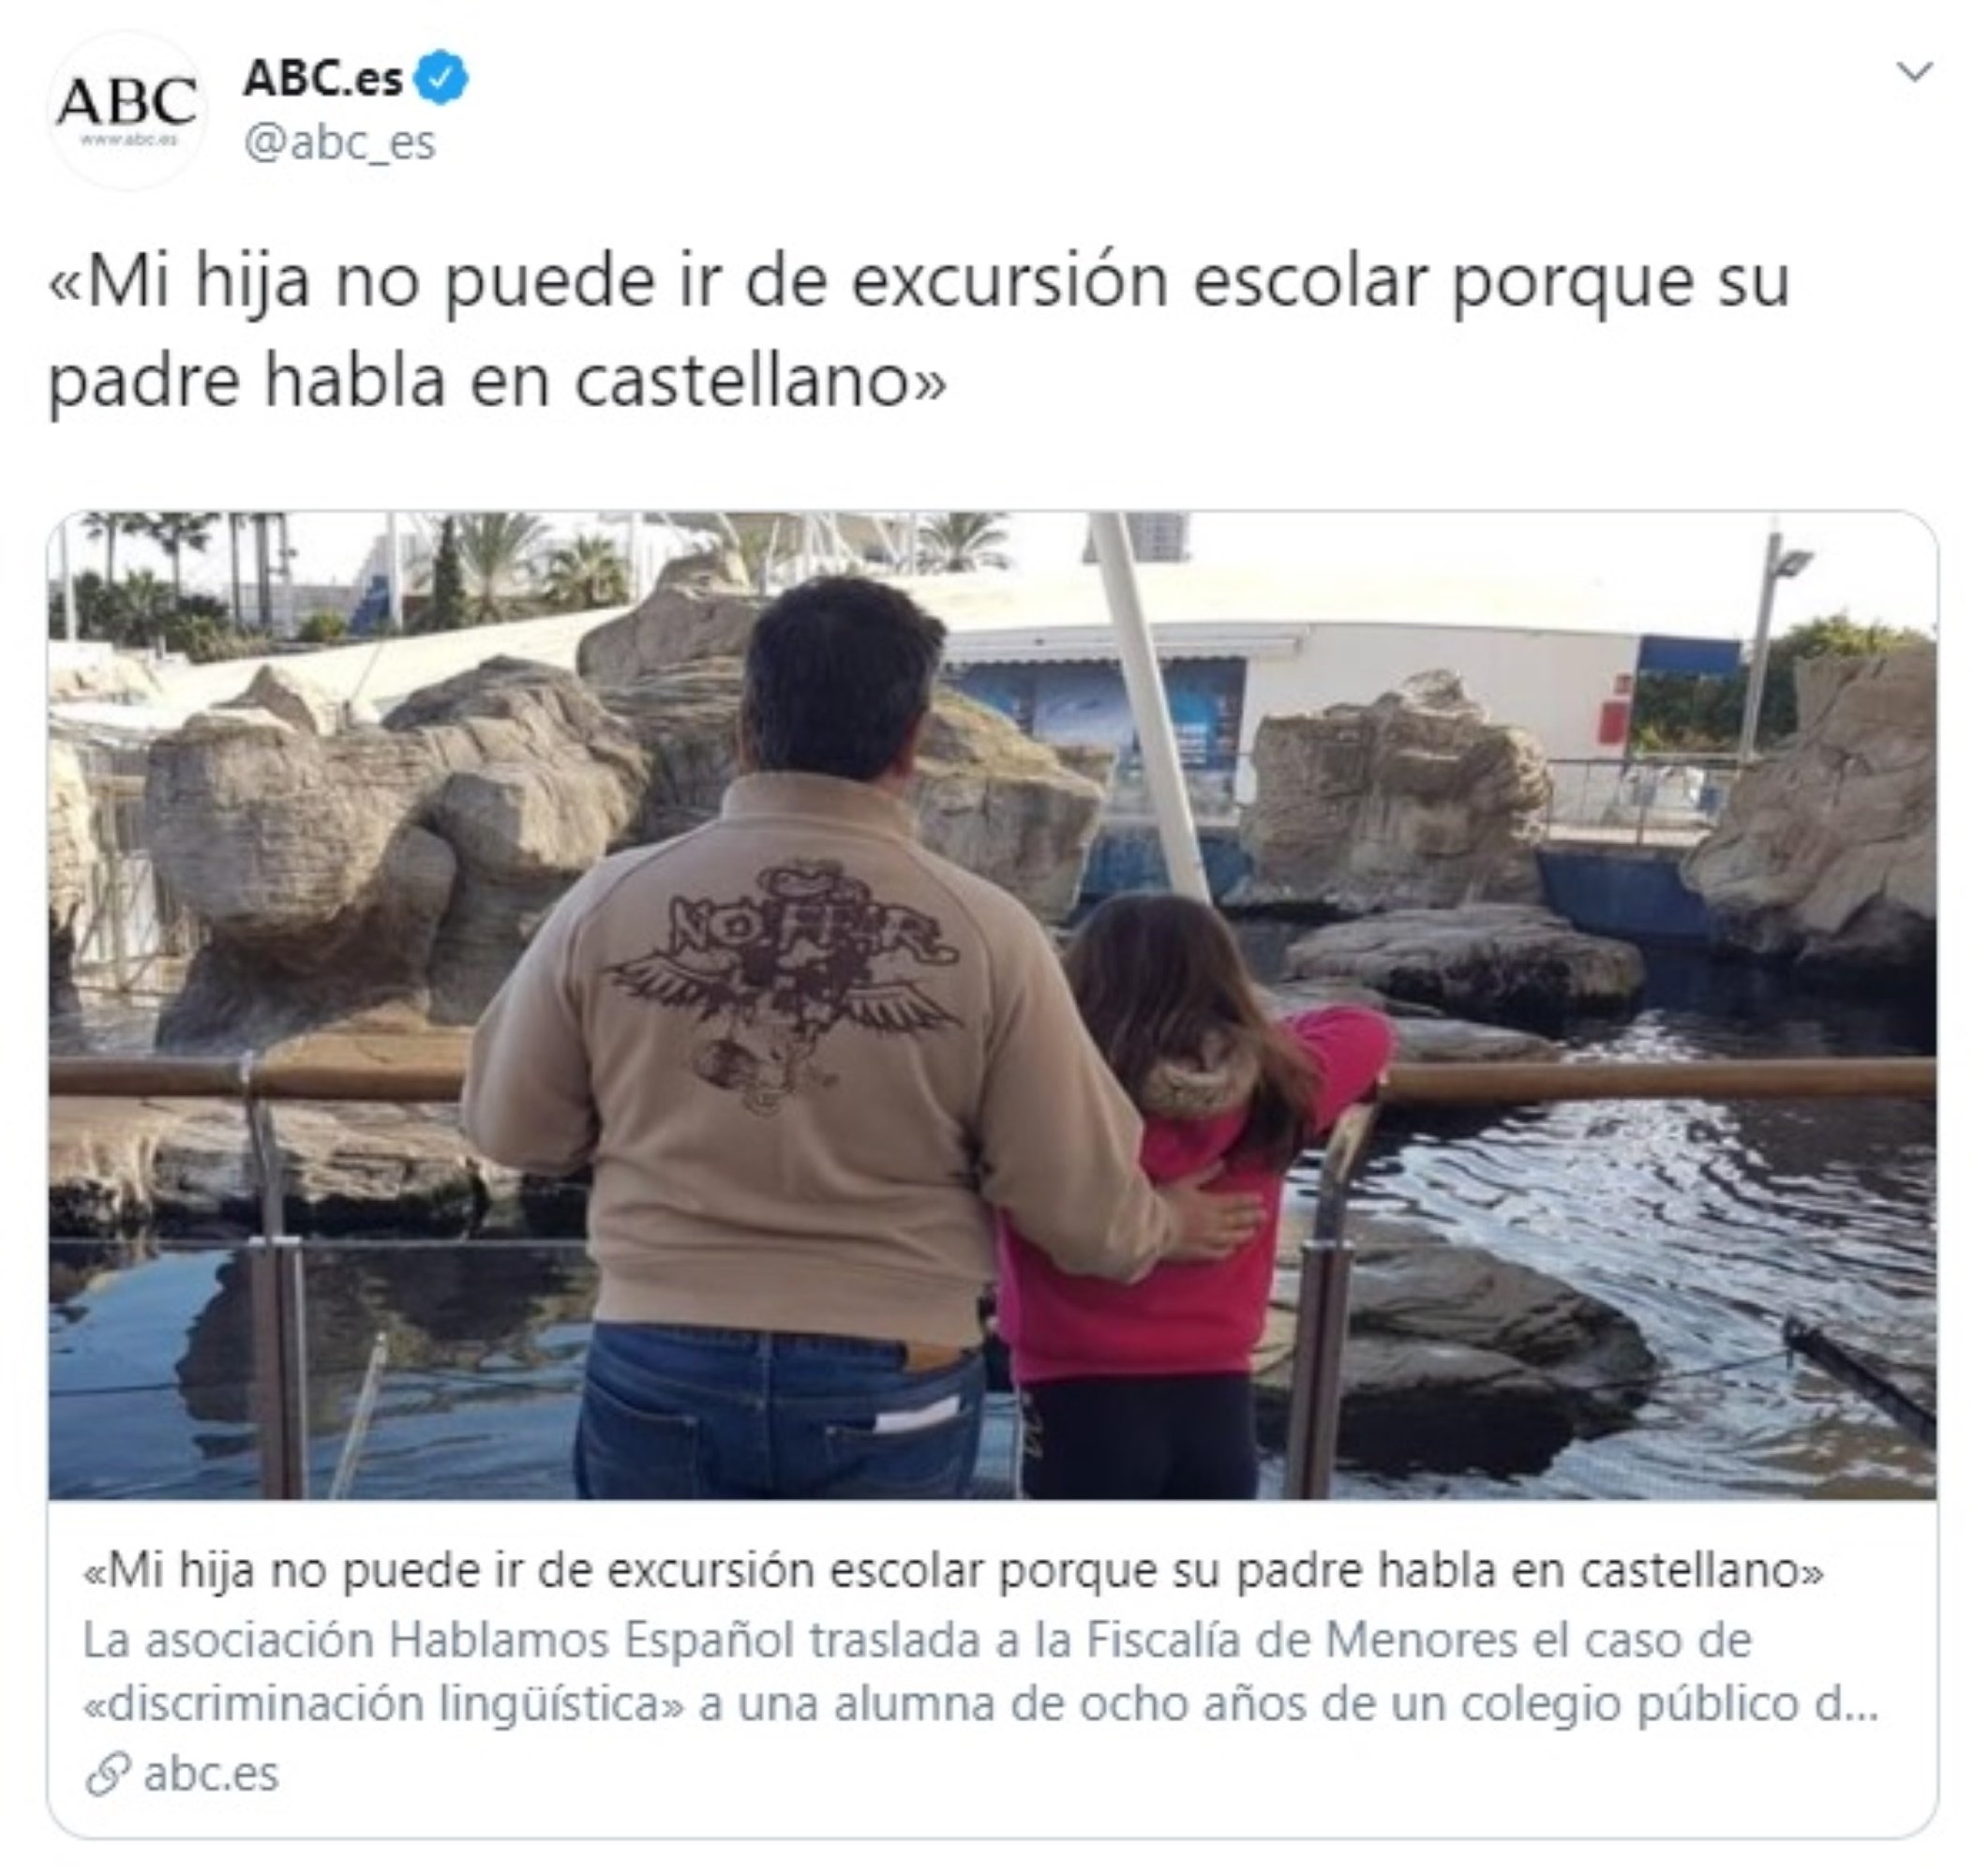 Ridículo viral de ABC con una niña que no va de excursión "porque su padre habla castellano"